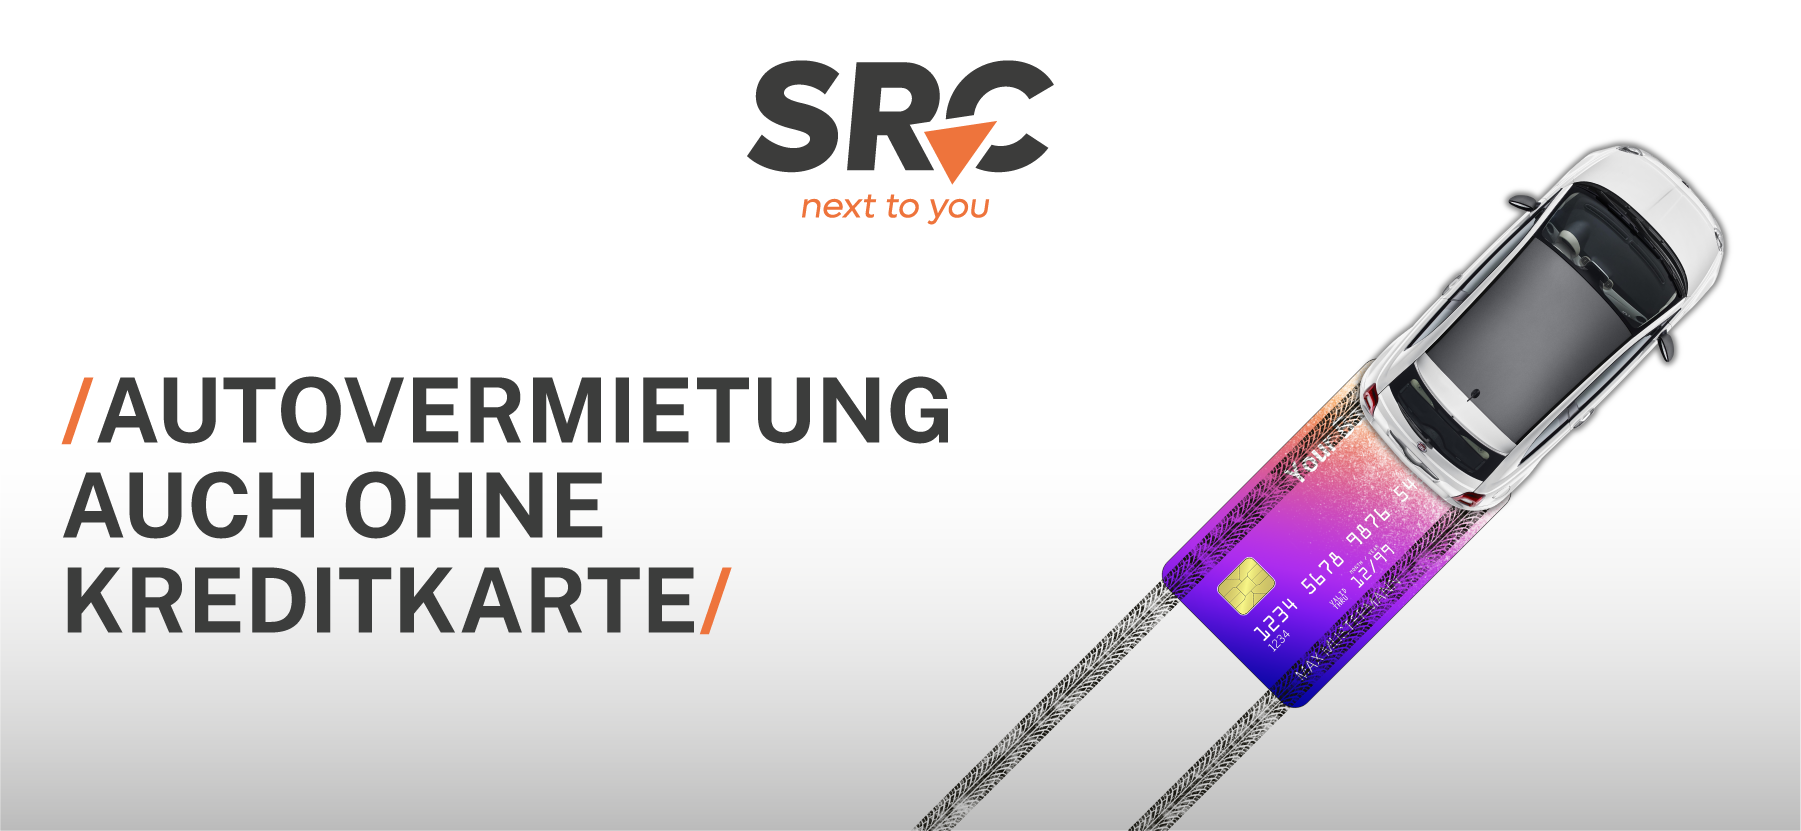 SRC_Autovermietung auch ohne kreditkarte